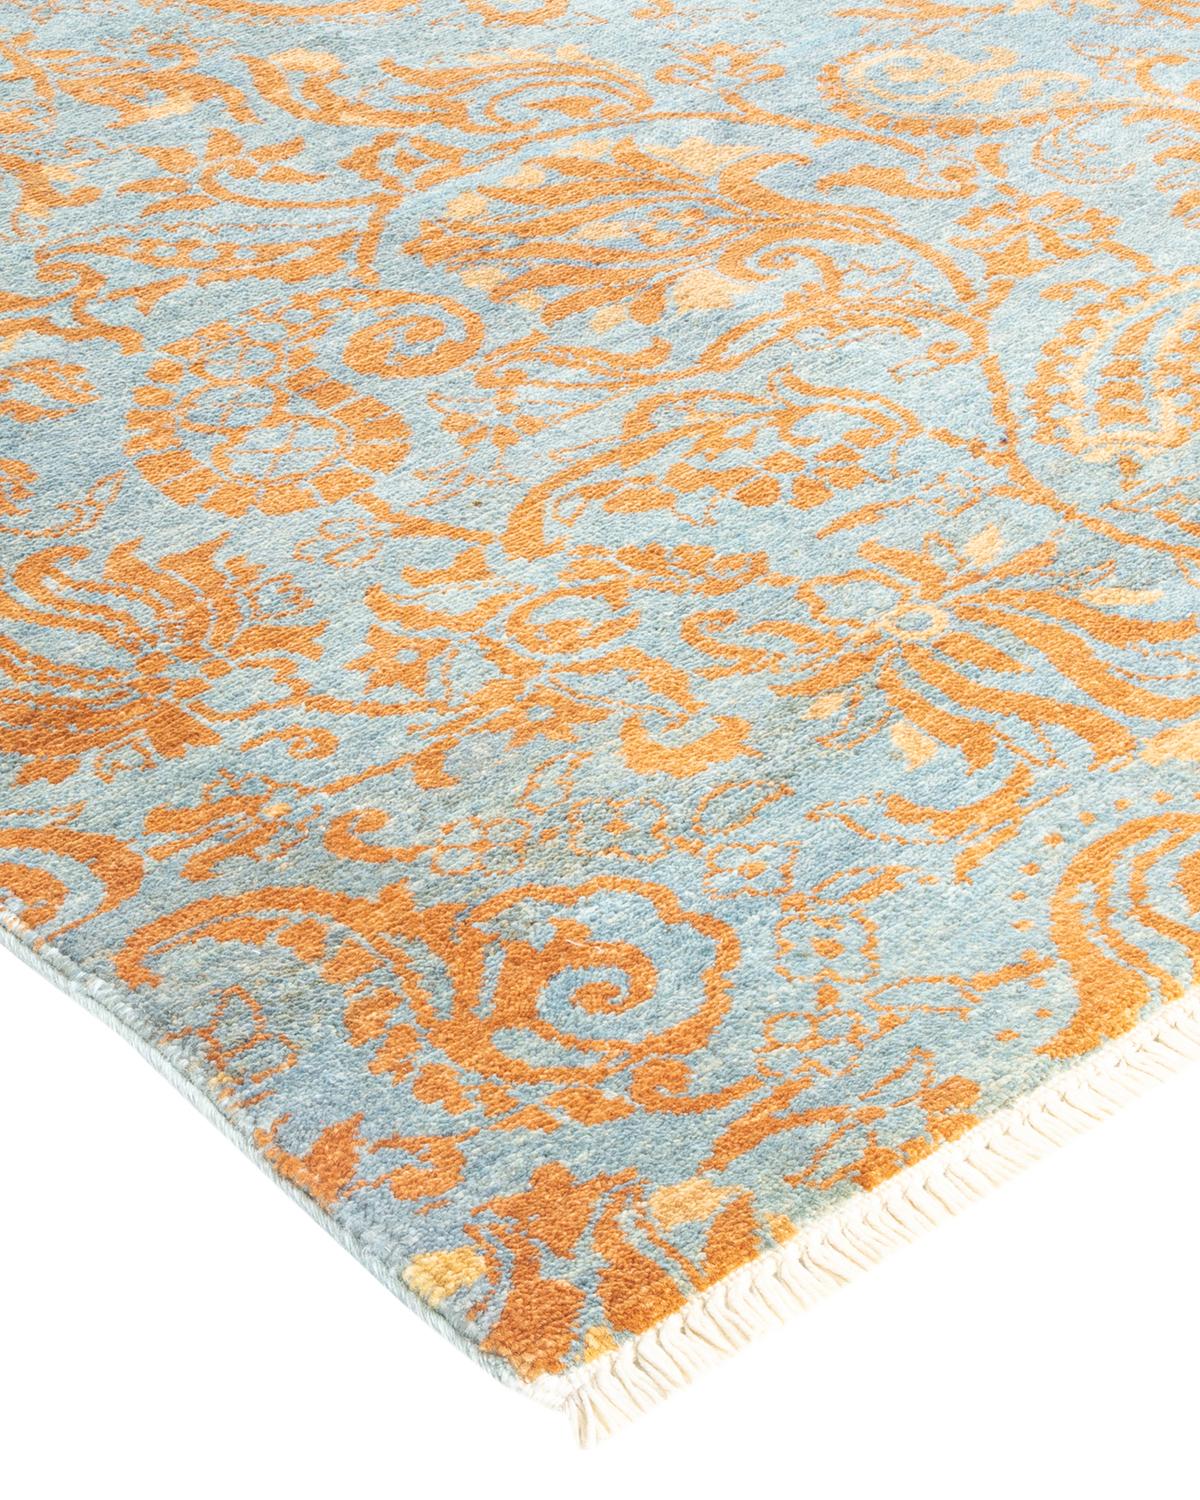 L'art méticuleux des textiles brodés à la main des tribus d'Ouzbékistan a inspiré la Collection Rugs de tapis Suzani. Les motifs audacieux, en particulier les grenades, le soleil et la lune, sont des éléments fréquents, dont les dessins simples mais